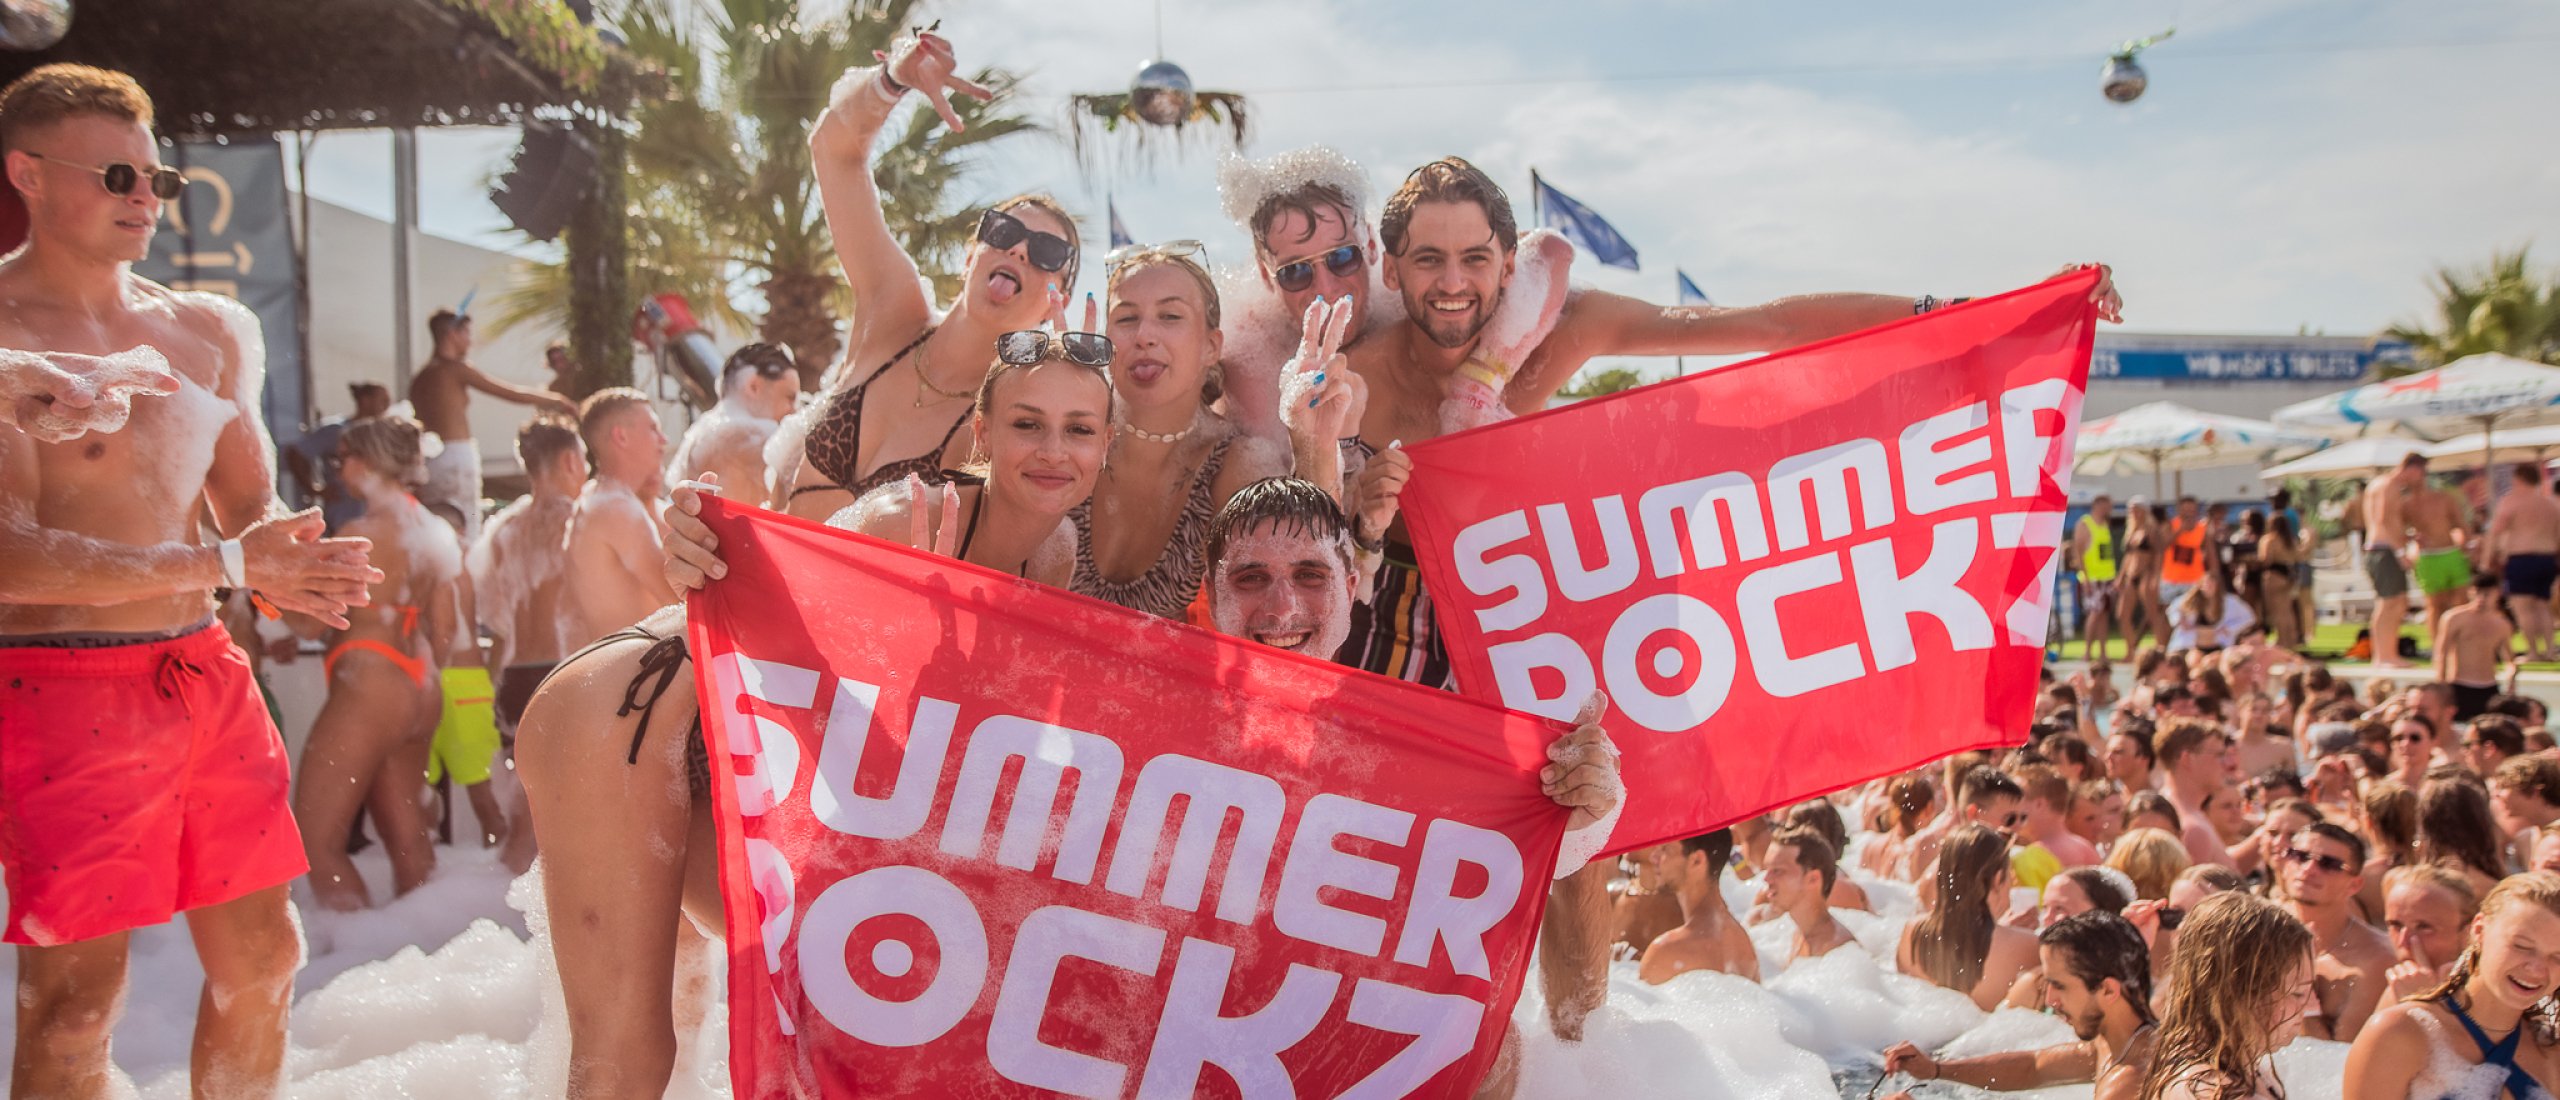 Summer Rockz pool party Lloret de Mar